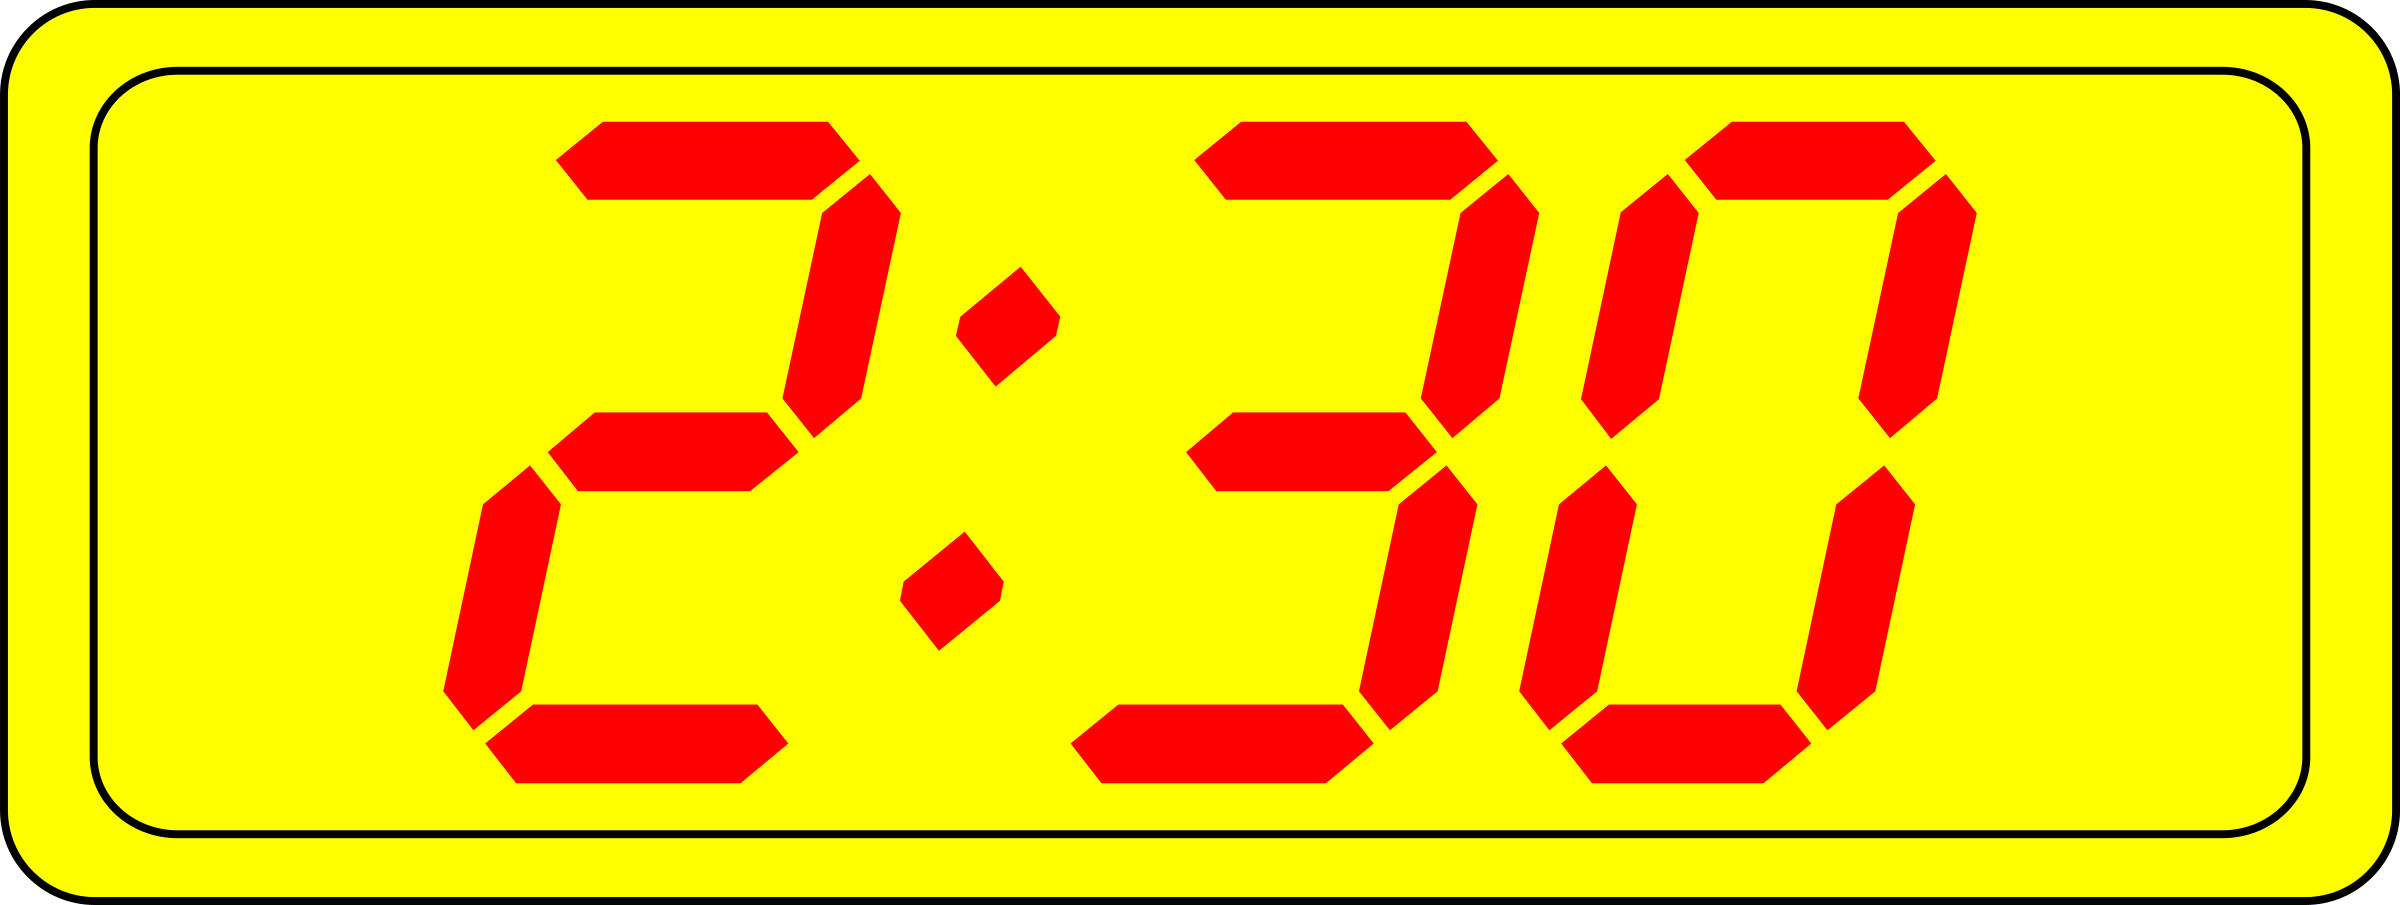 Digital Clock Clipart 3 00.